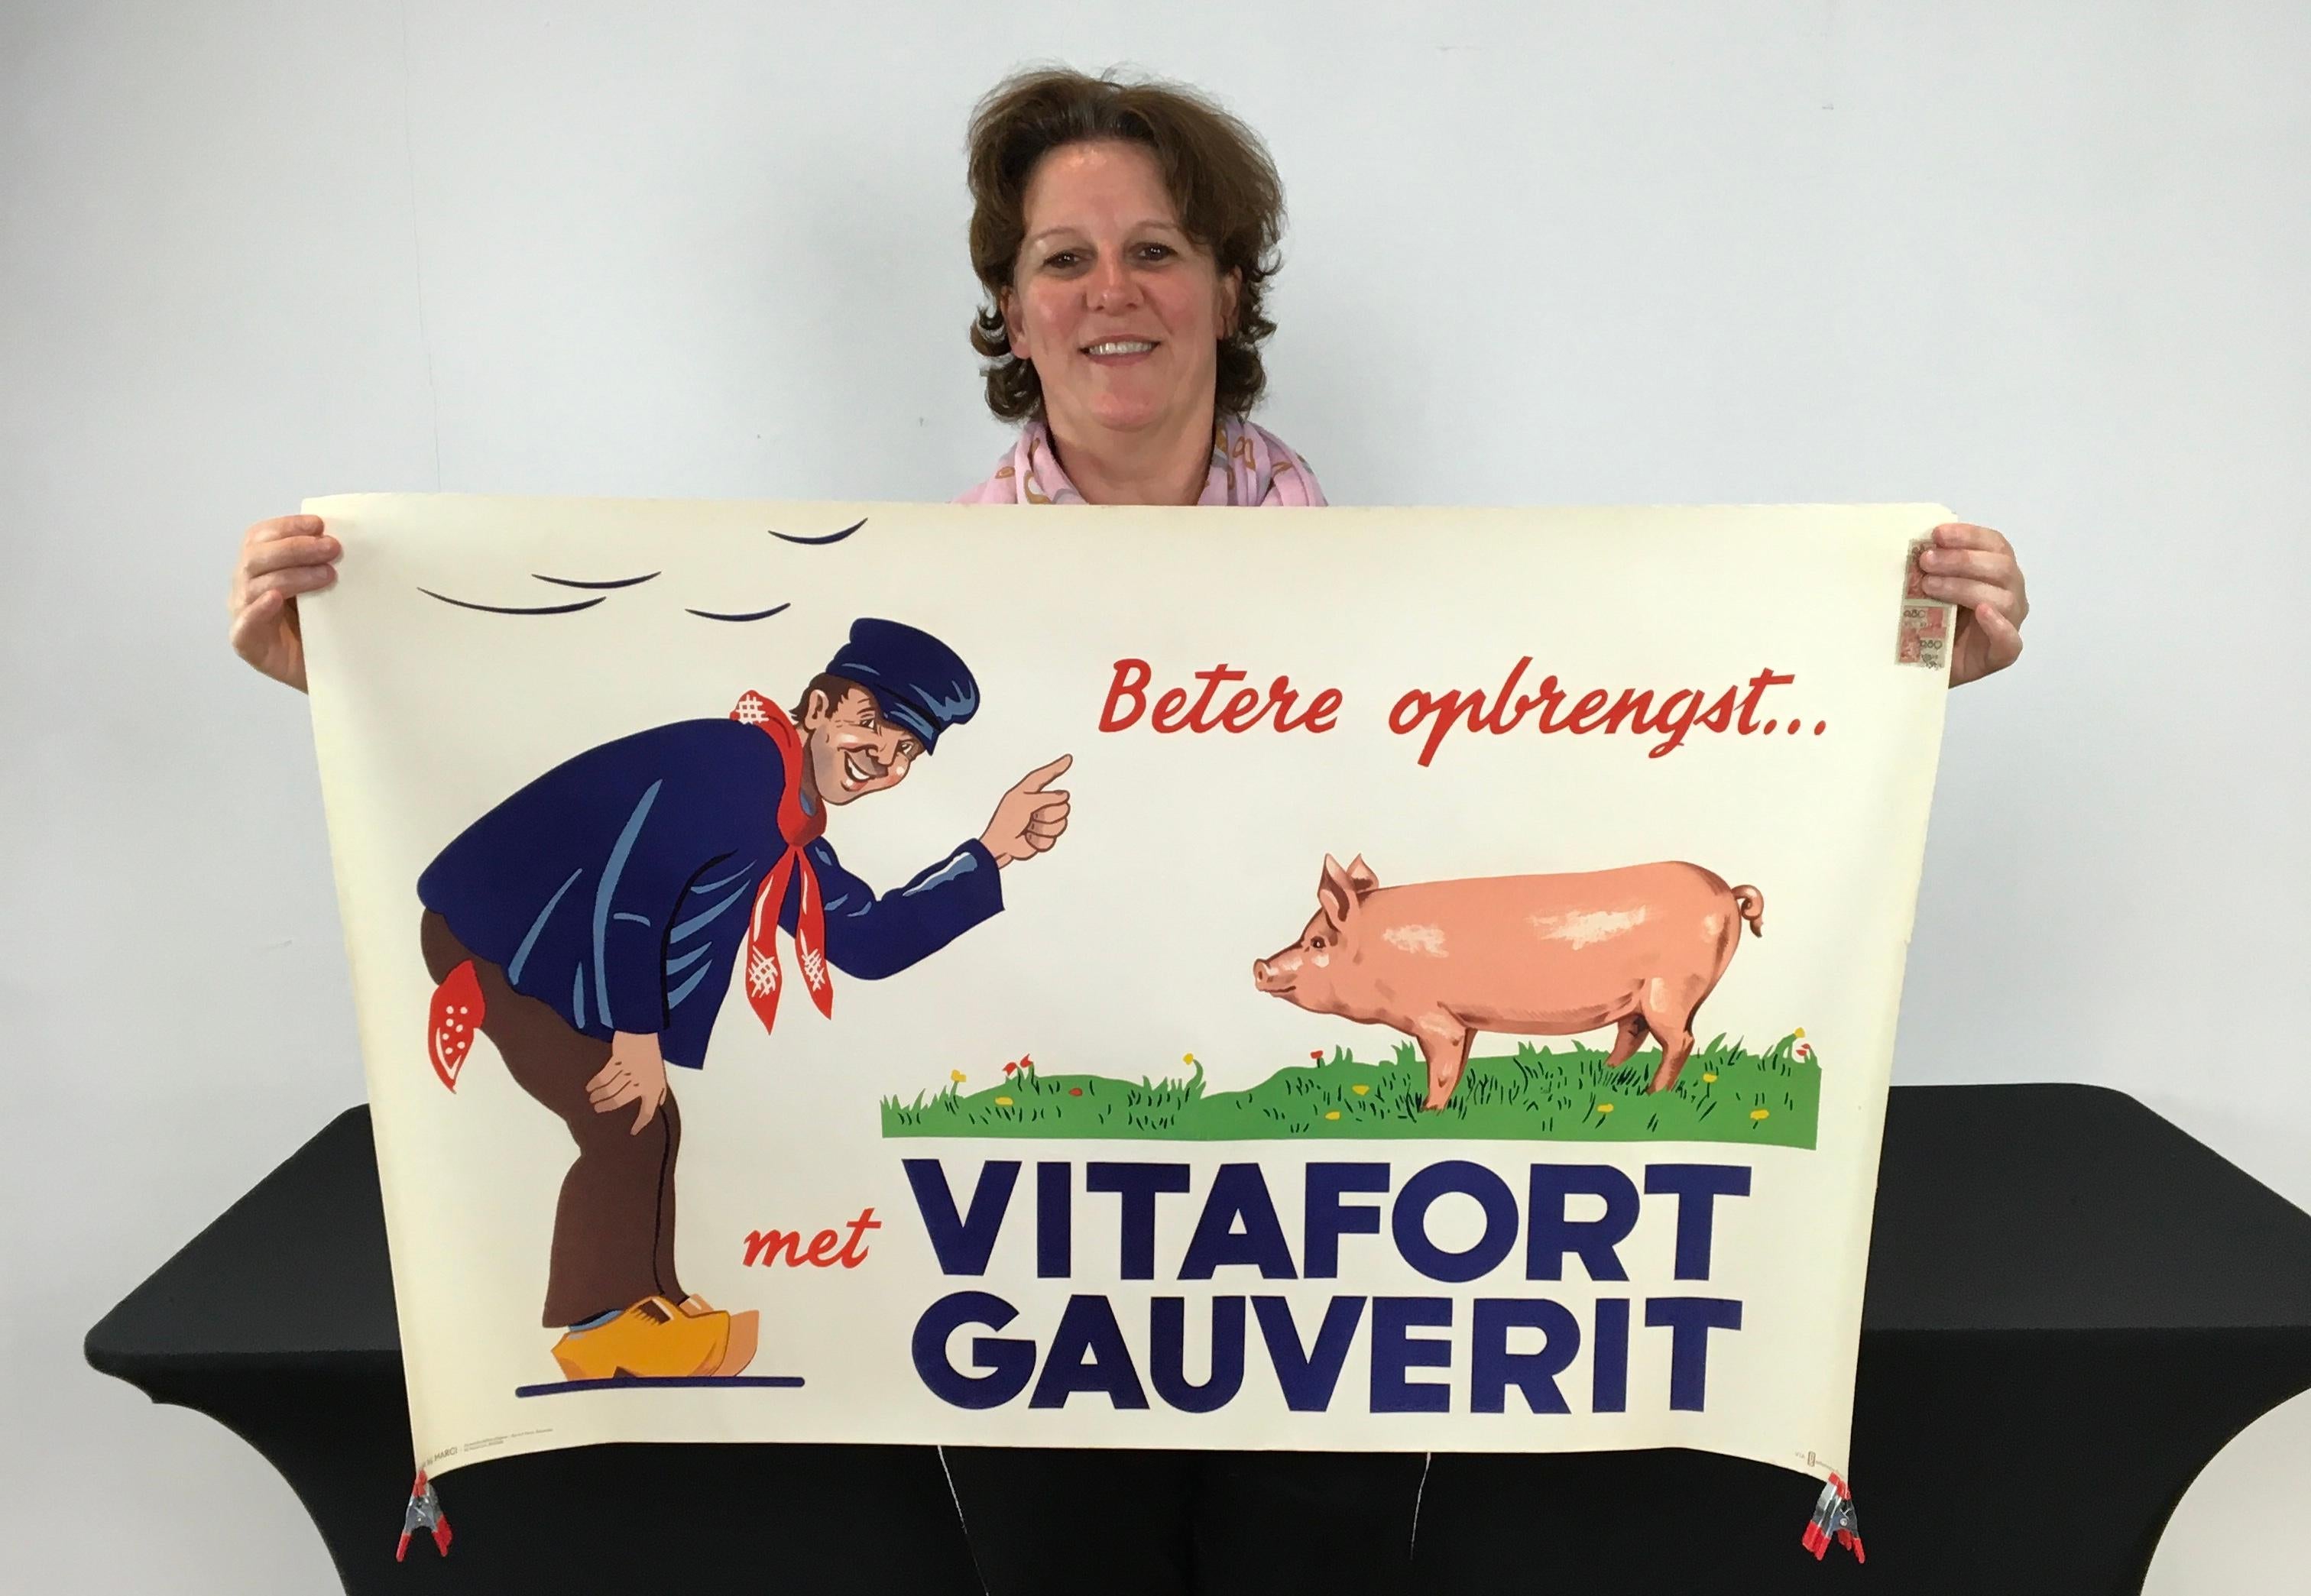 1950er-Jahre-Litho-Poster mit Bauer und Schwein. 
Mitte des Jahrhunderts entworfenes lithografisches Werbeplakat 
für Vitafort Gauverit Rinderfutter. 
Eine Papieraffiche mit dem Motiv eines Bauern in typischer Kleidung, einem rot-weißen Schal und